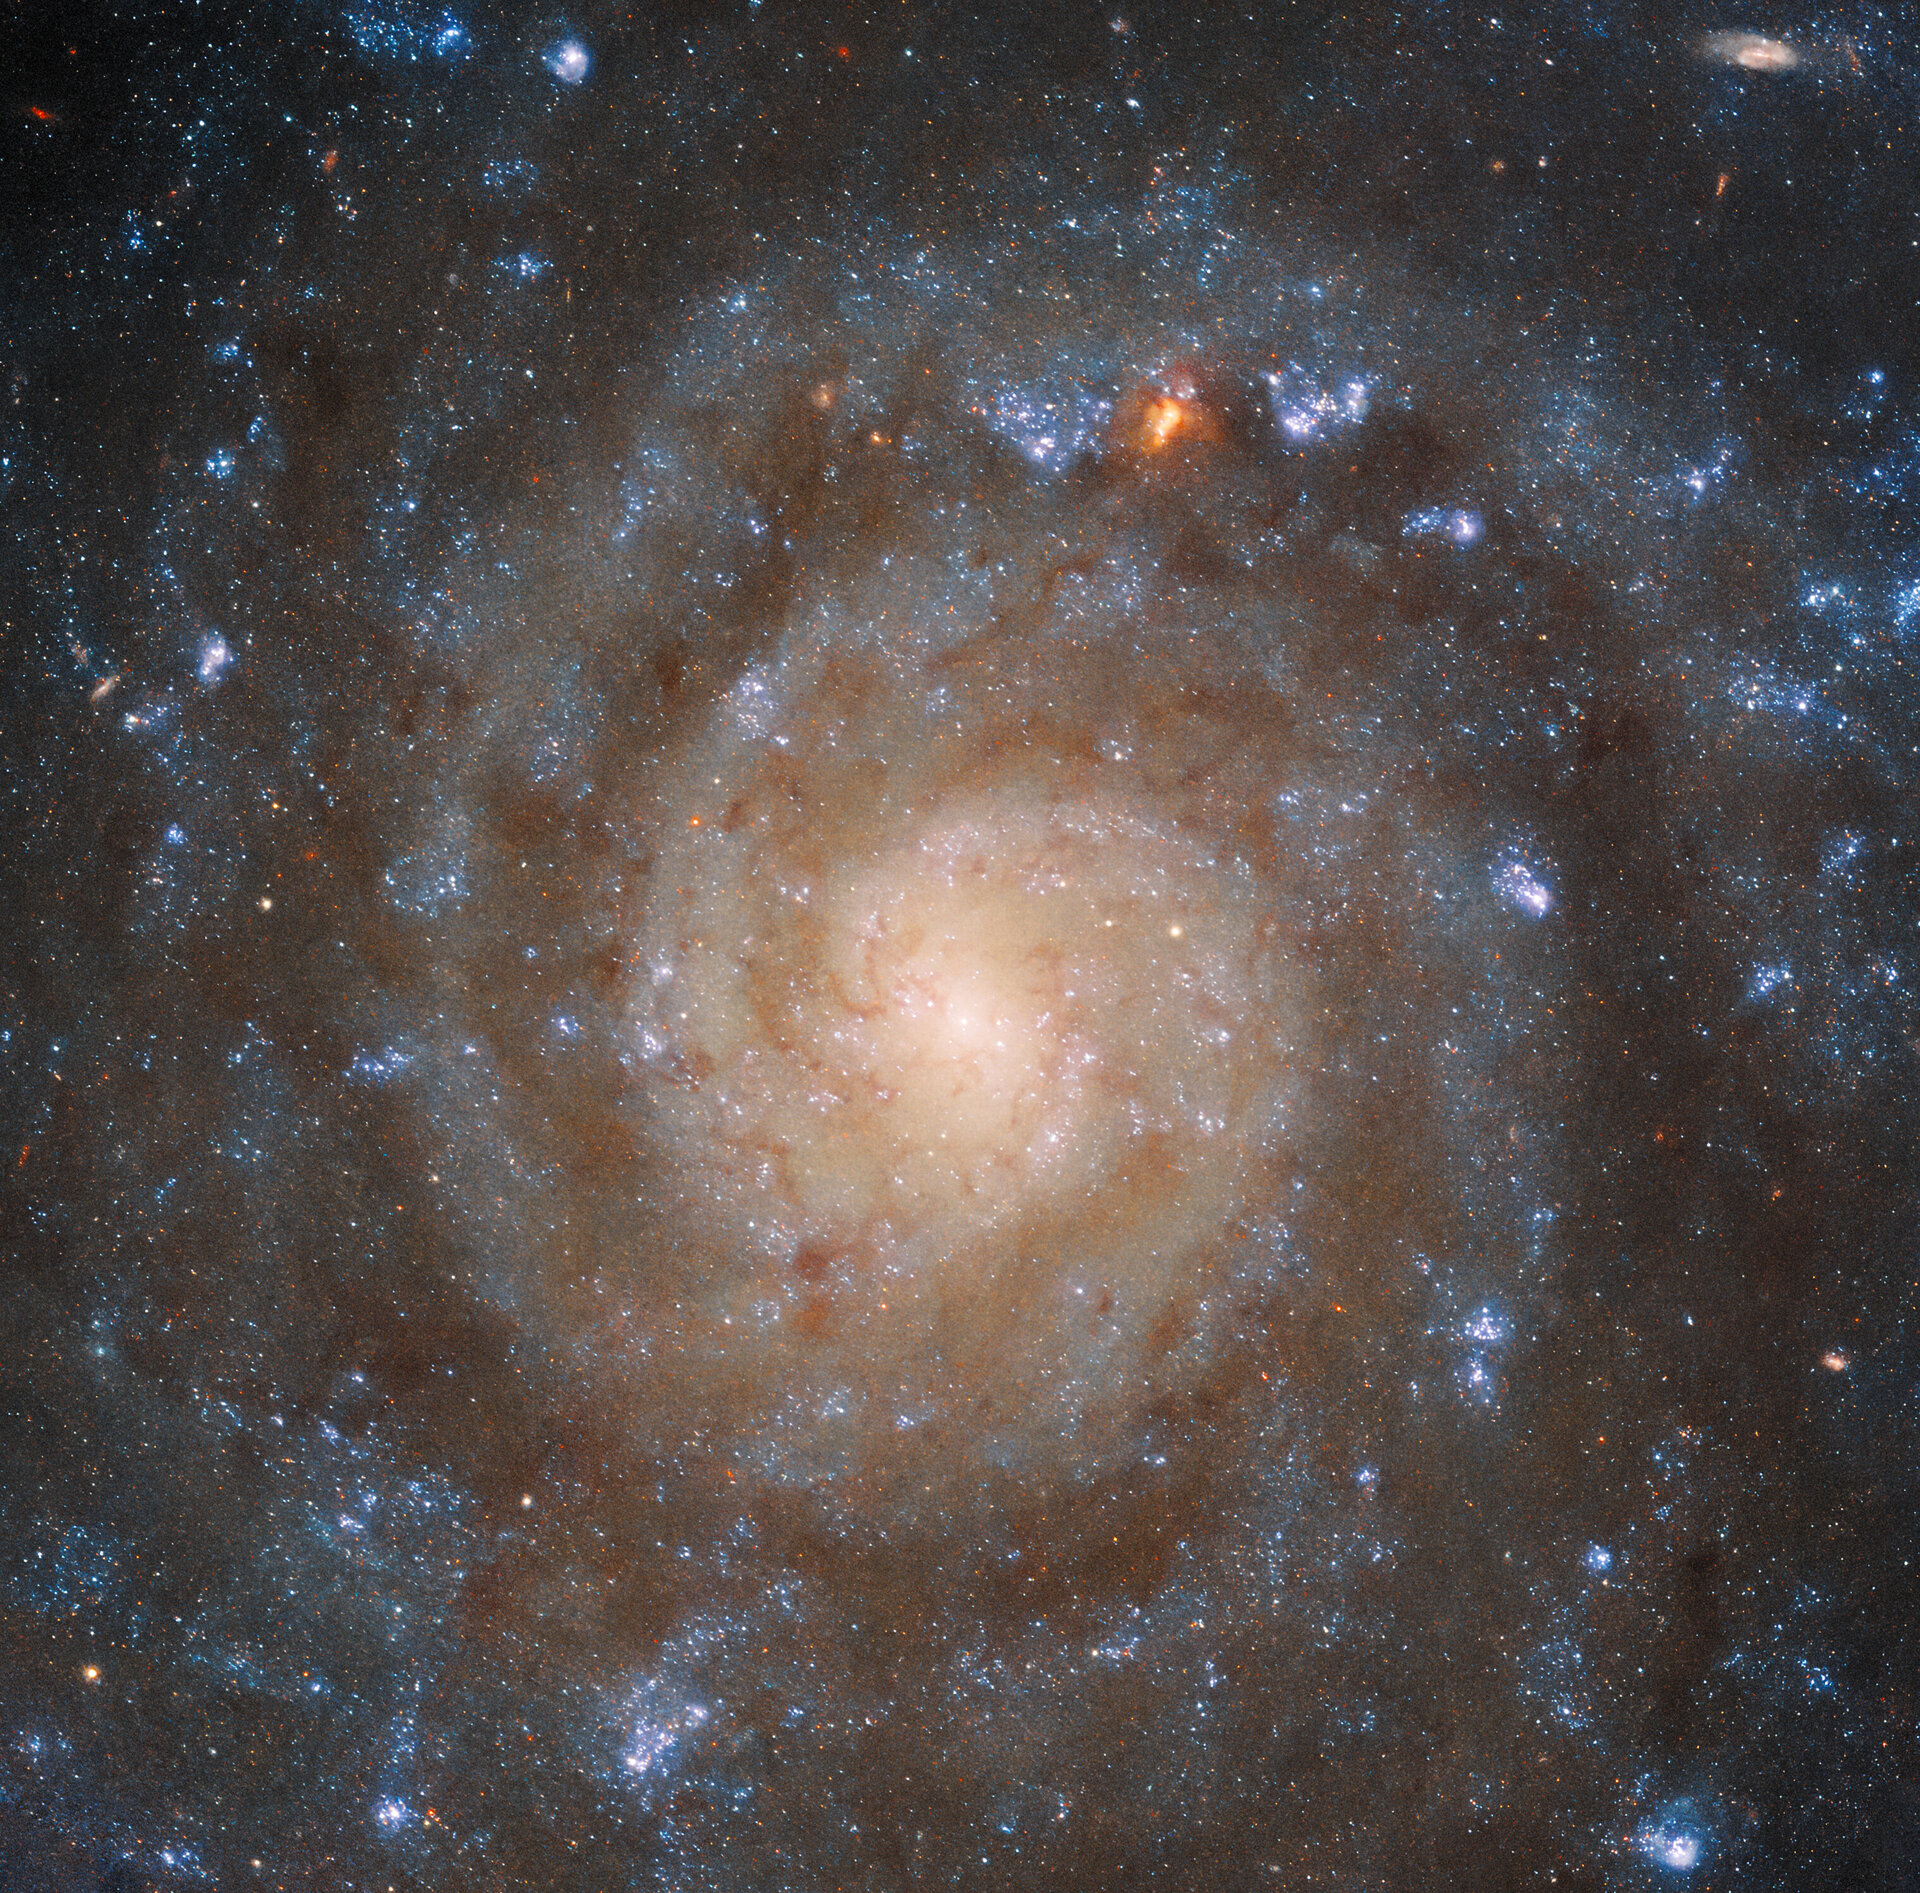 A estrutura espiral sinuosa da galáxia IC 5332 é retratada em detalhes surpreendentes por esta imagem do Telescópio Espacial Hubble da NASA/ESA.  A clareza da Wide Field Camera 3 (WFC3) do Hubble separa os braços da galáxia de manchas escuras de poeira entre eles, que bloqueiam a luz ultravioleta e visível a que o Hubble é sensível.  Estrelas mais jovens e mais velhas podem ser diferenciadas por suas cores, mostrando como elas estão distribuídas por toda a galáxia.  Enquanto isso, a imagem MIRI de Webb fornece uma visão muito diferente, destacando os padrões de gás espalhados por toda a galáxia.